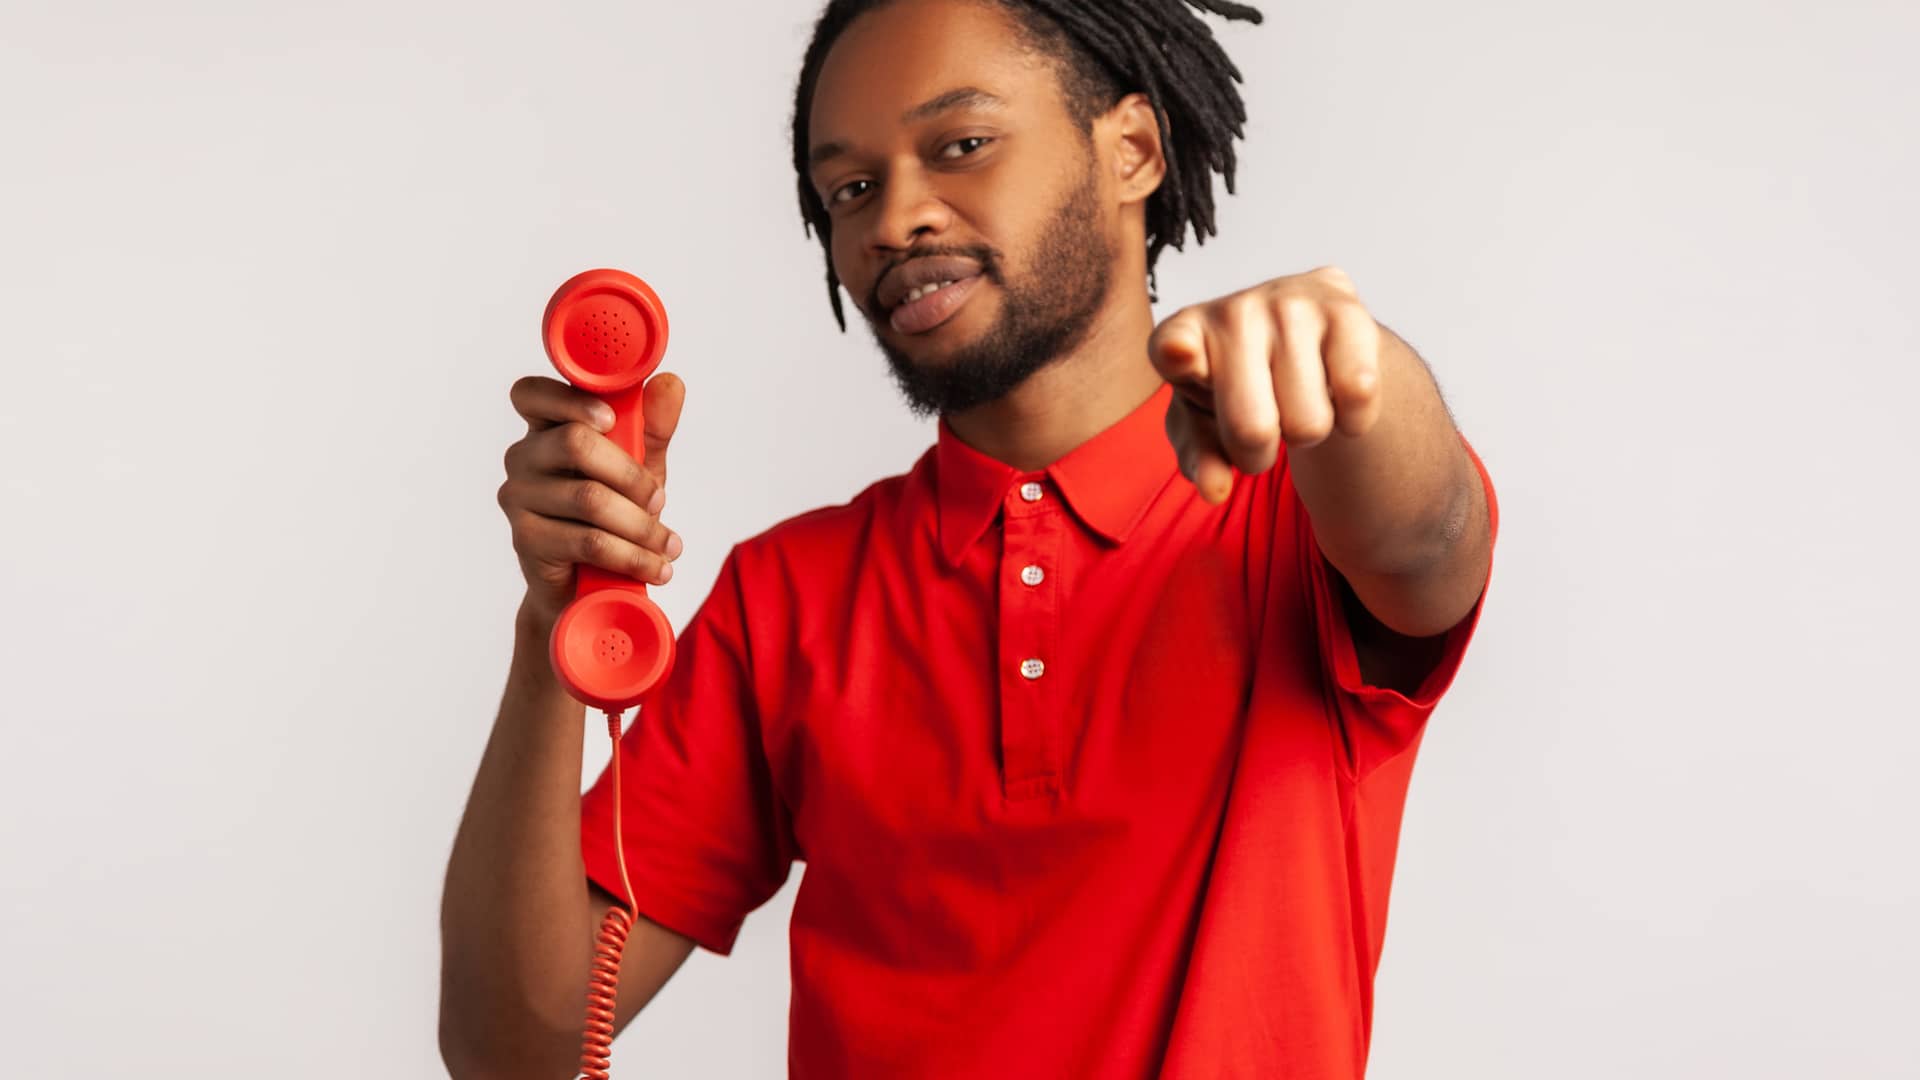 Joven con teléfono fijo descolgado simboliza tarifas sin establecimiento de llamada de pepephone